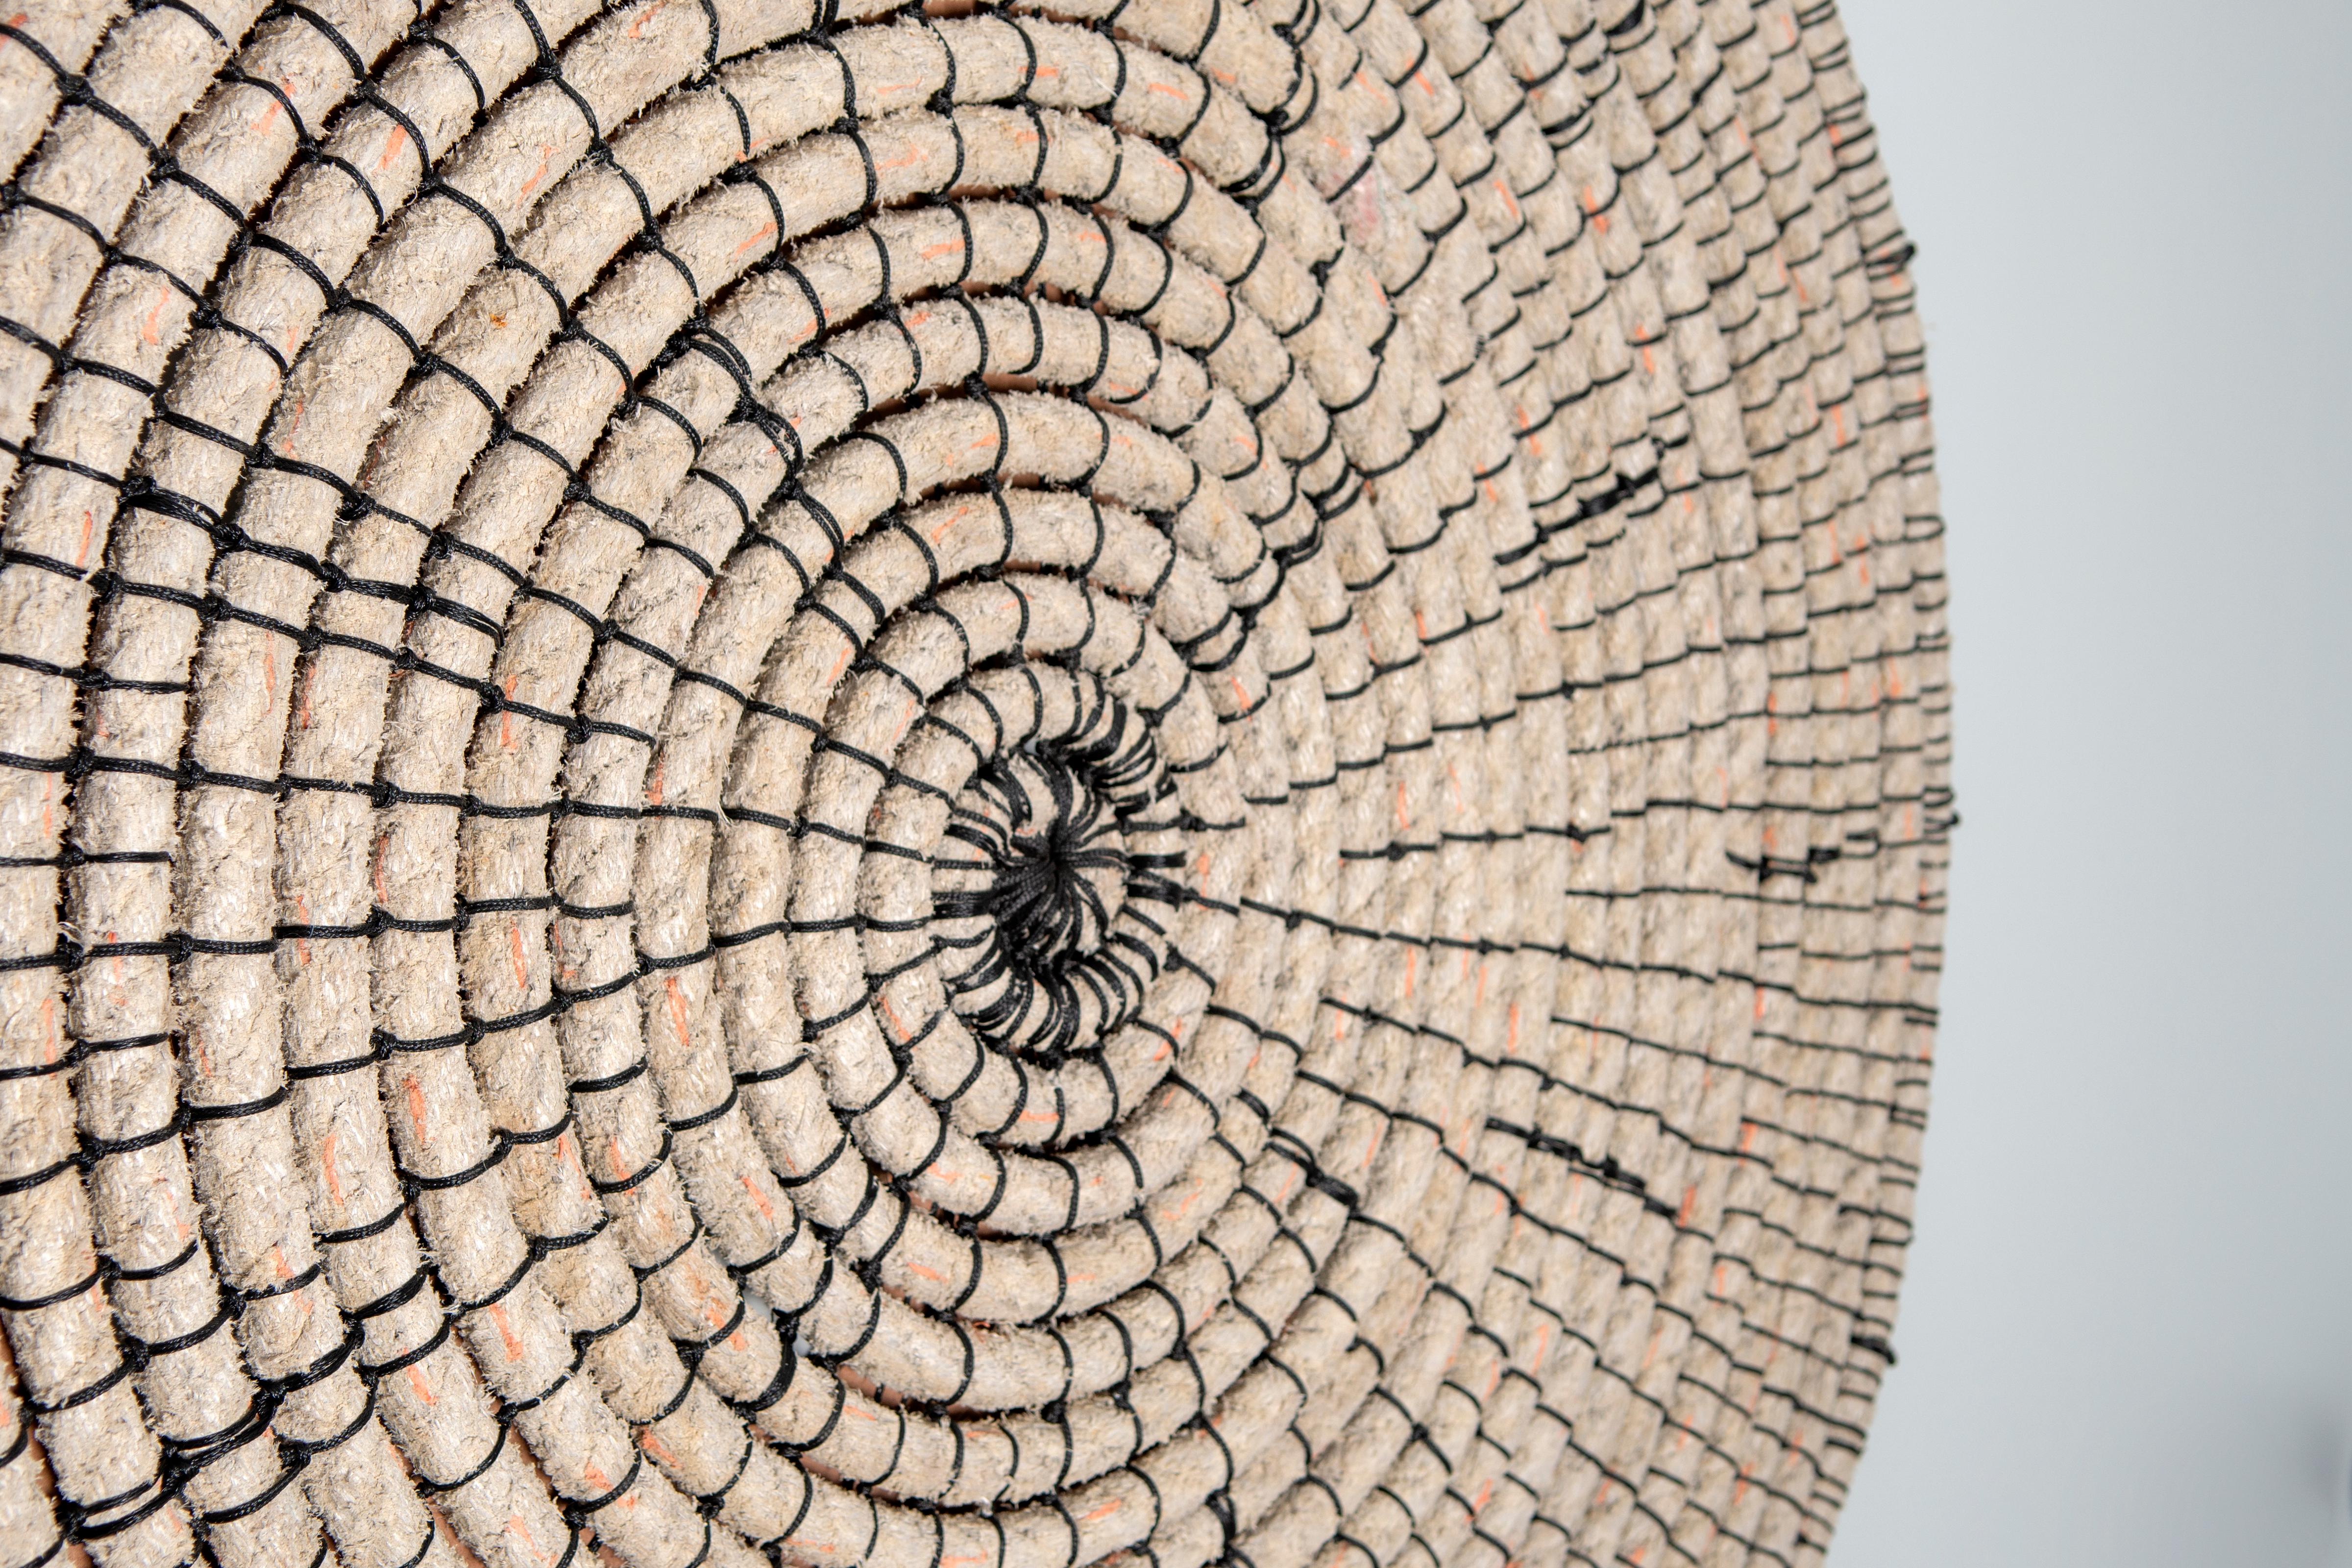 Baskets reimagined 1, Laimi Mbangula, rope, acrylic string, wooden base 2